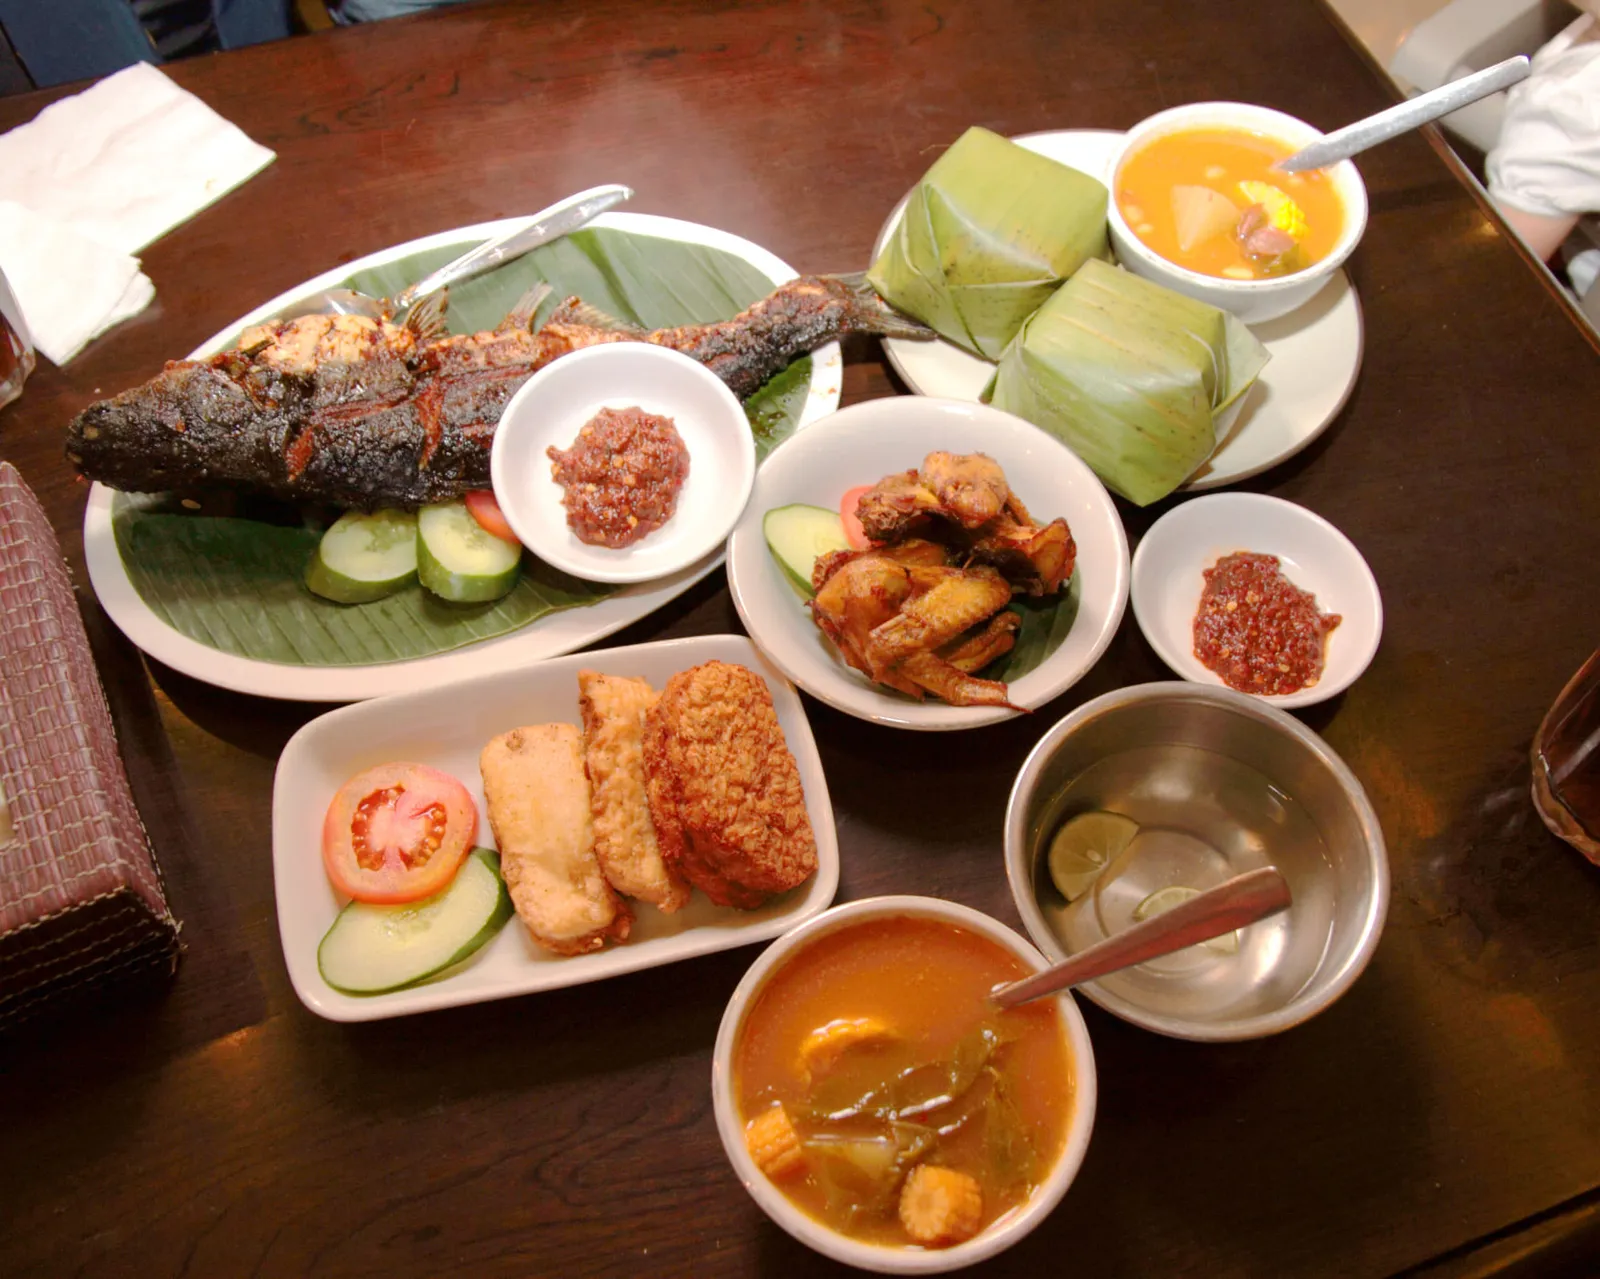 Tradisi Hingga Resep, Ini 7 Fakta Menarik Tentang Masakan Indonesia